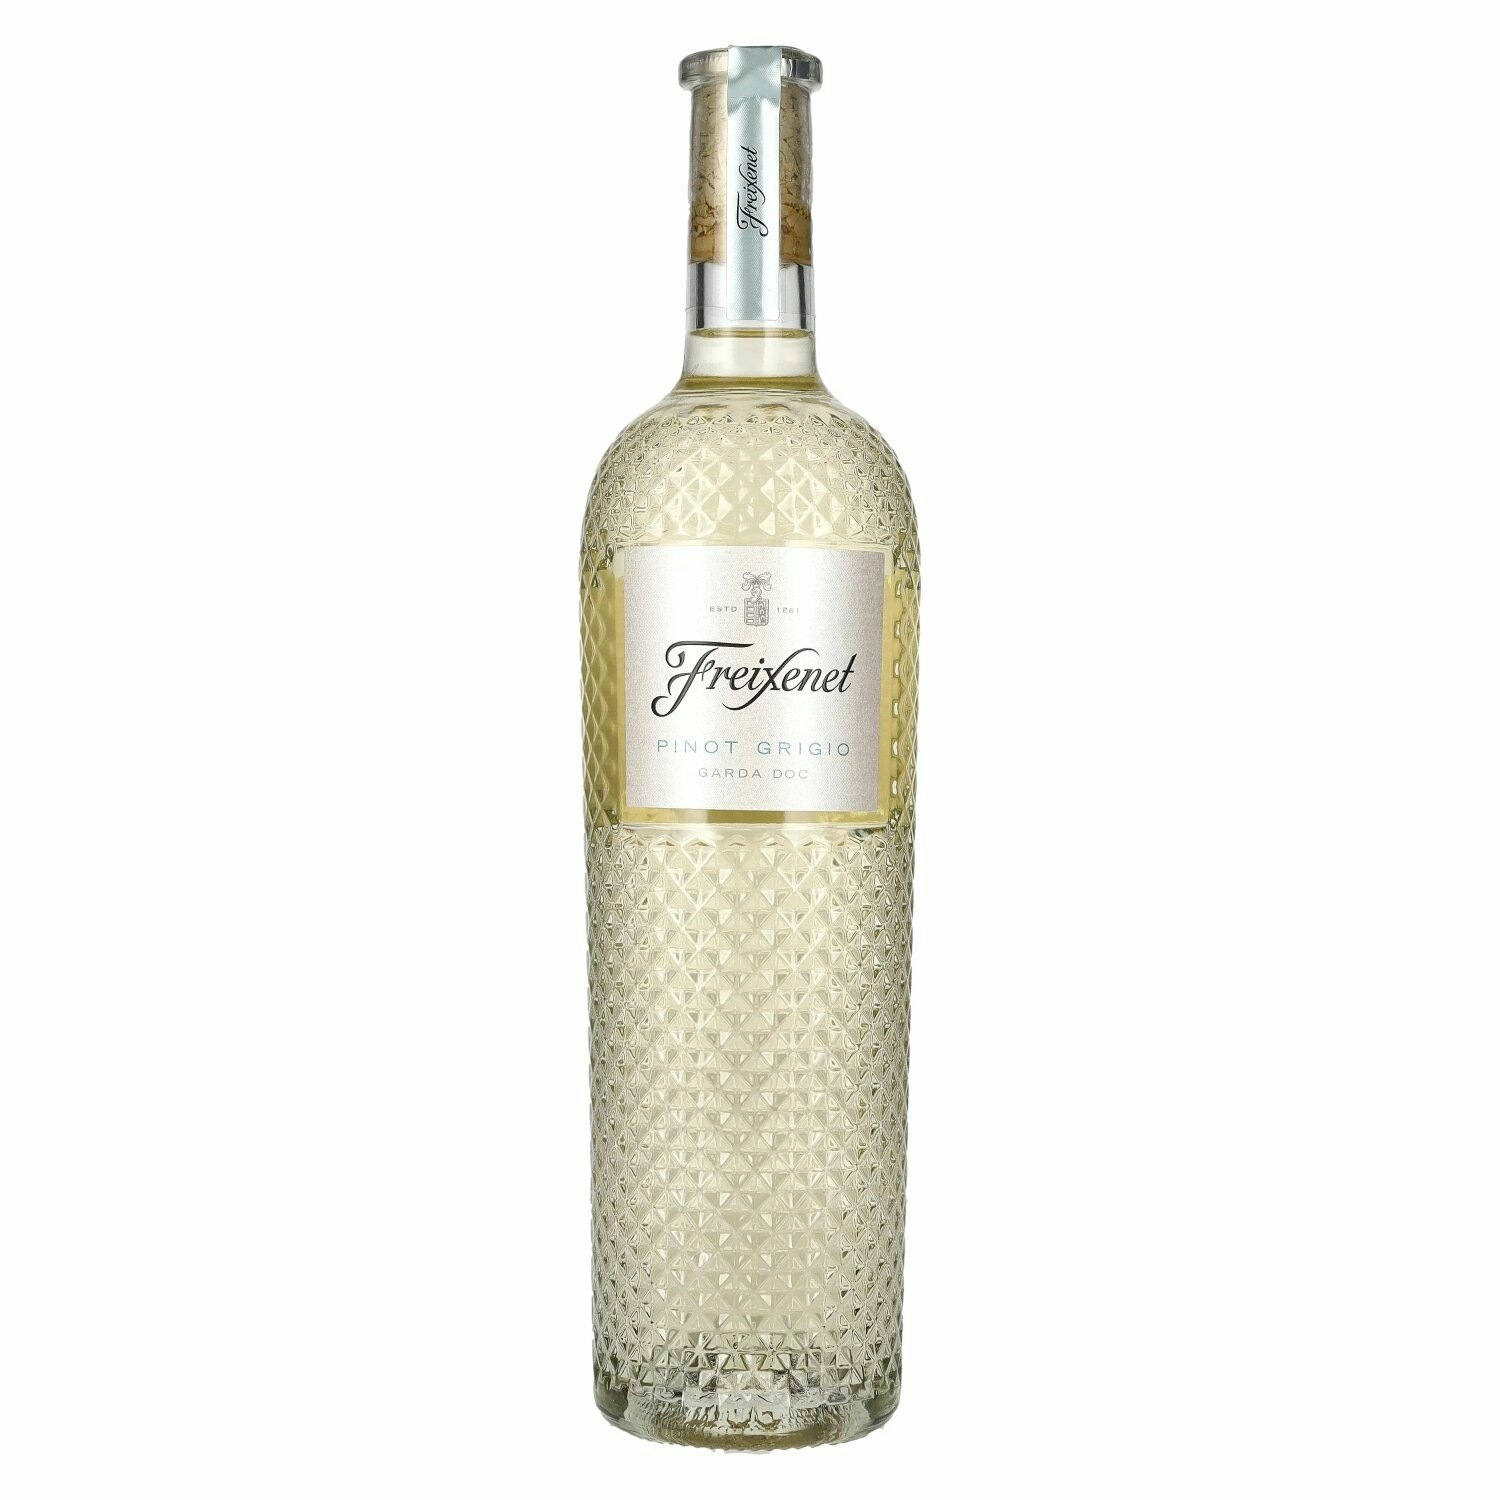 Freixenet Pinot Grigio Garda DOC 2021 11,5% Vol. 0,75l